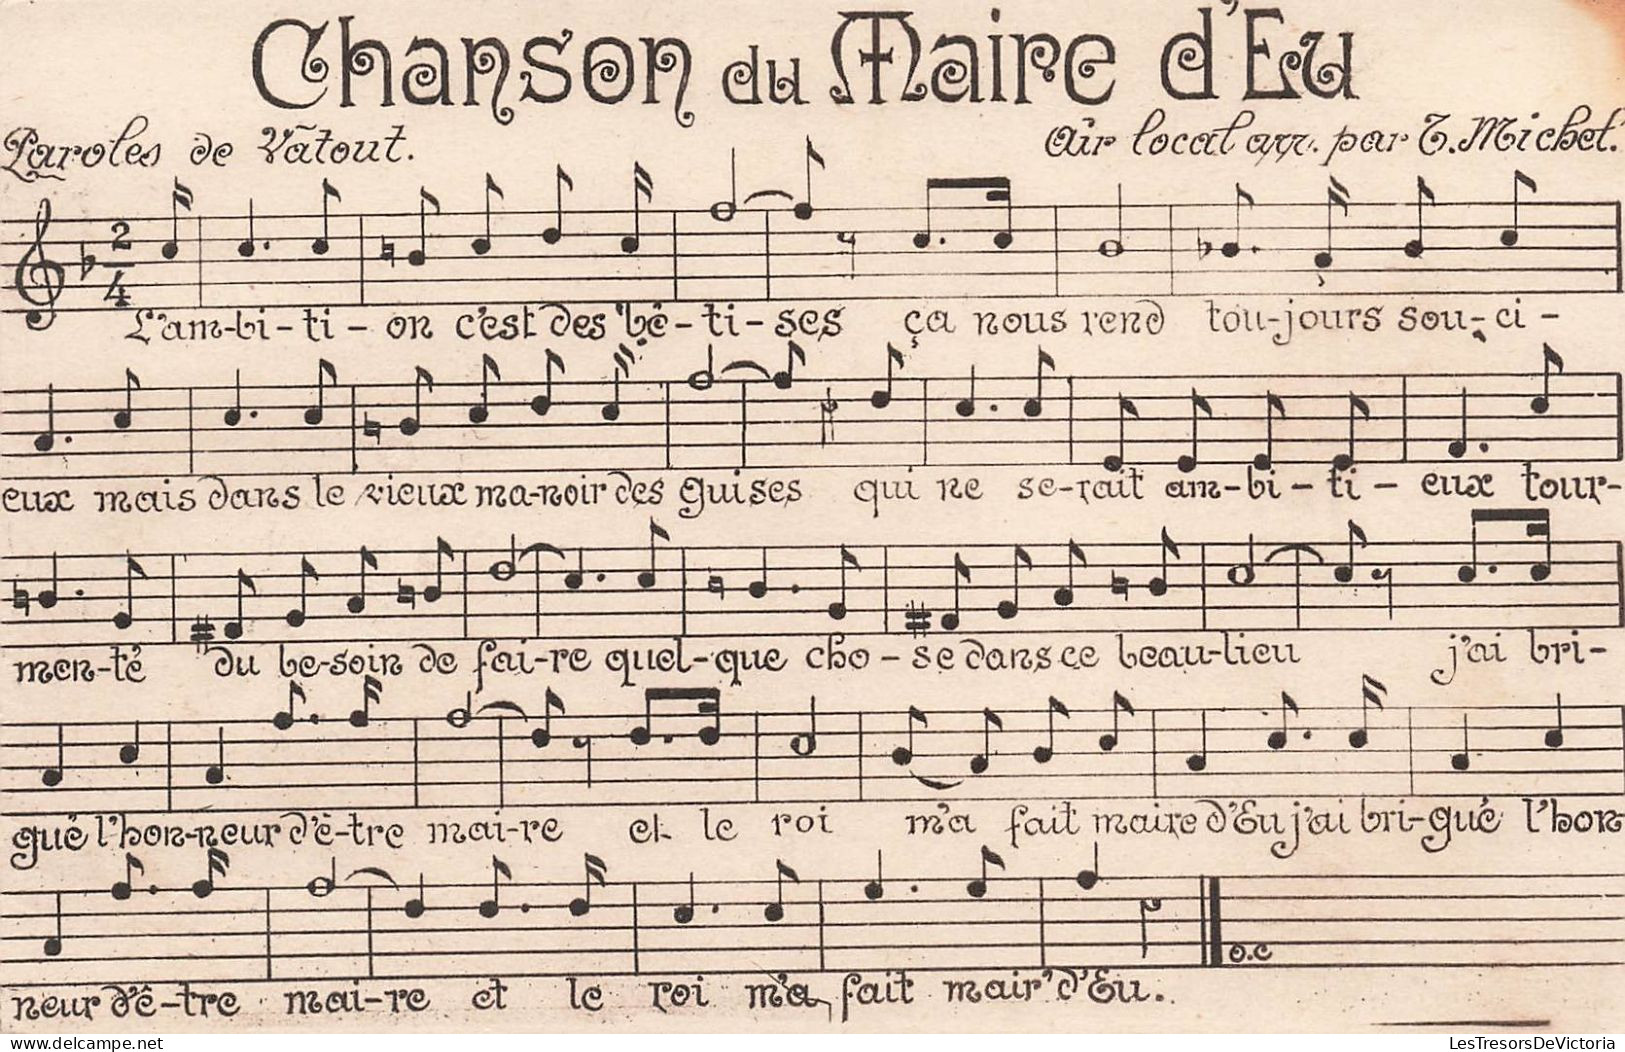 FOLKLORES - Musique - Chanson Du Maire D'Eu - Carte Postale Ancienne - Music